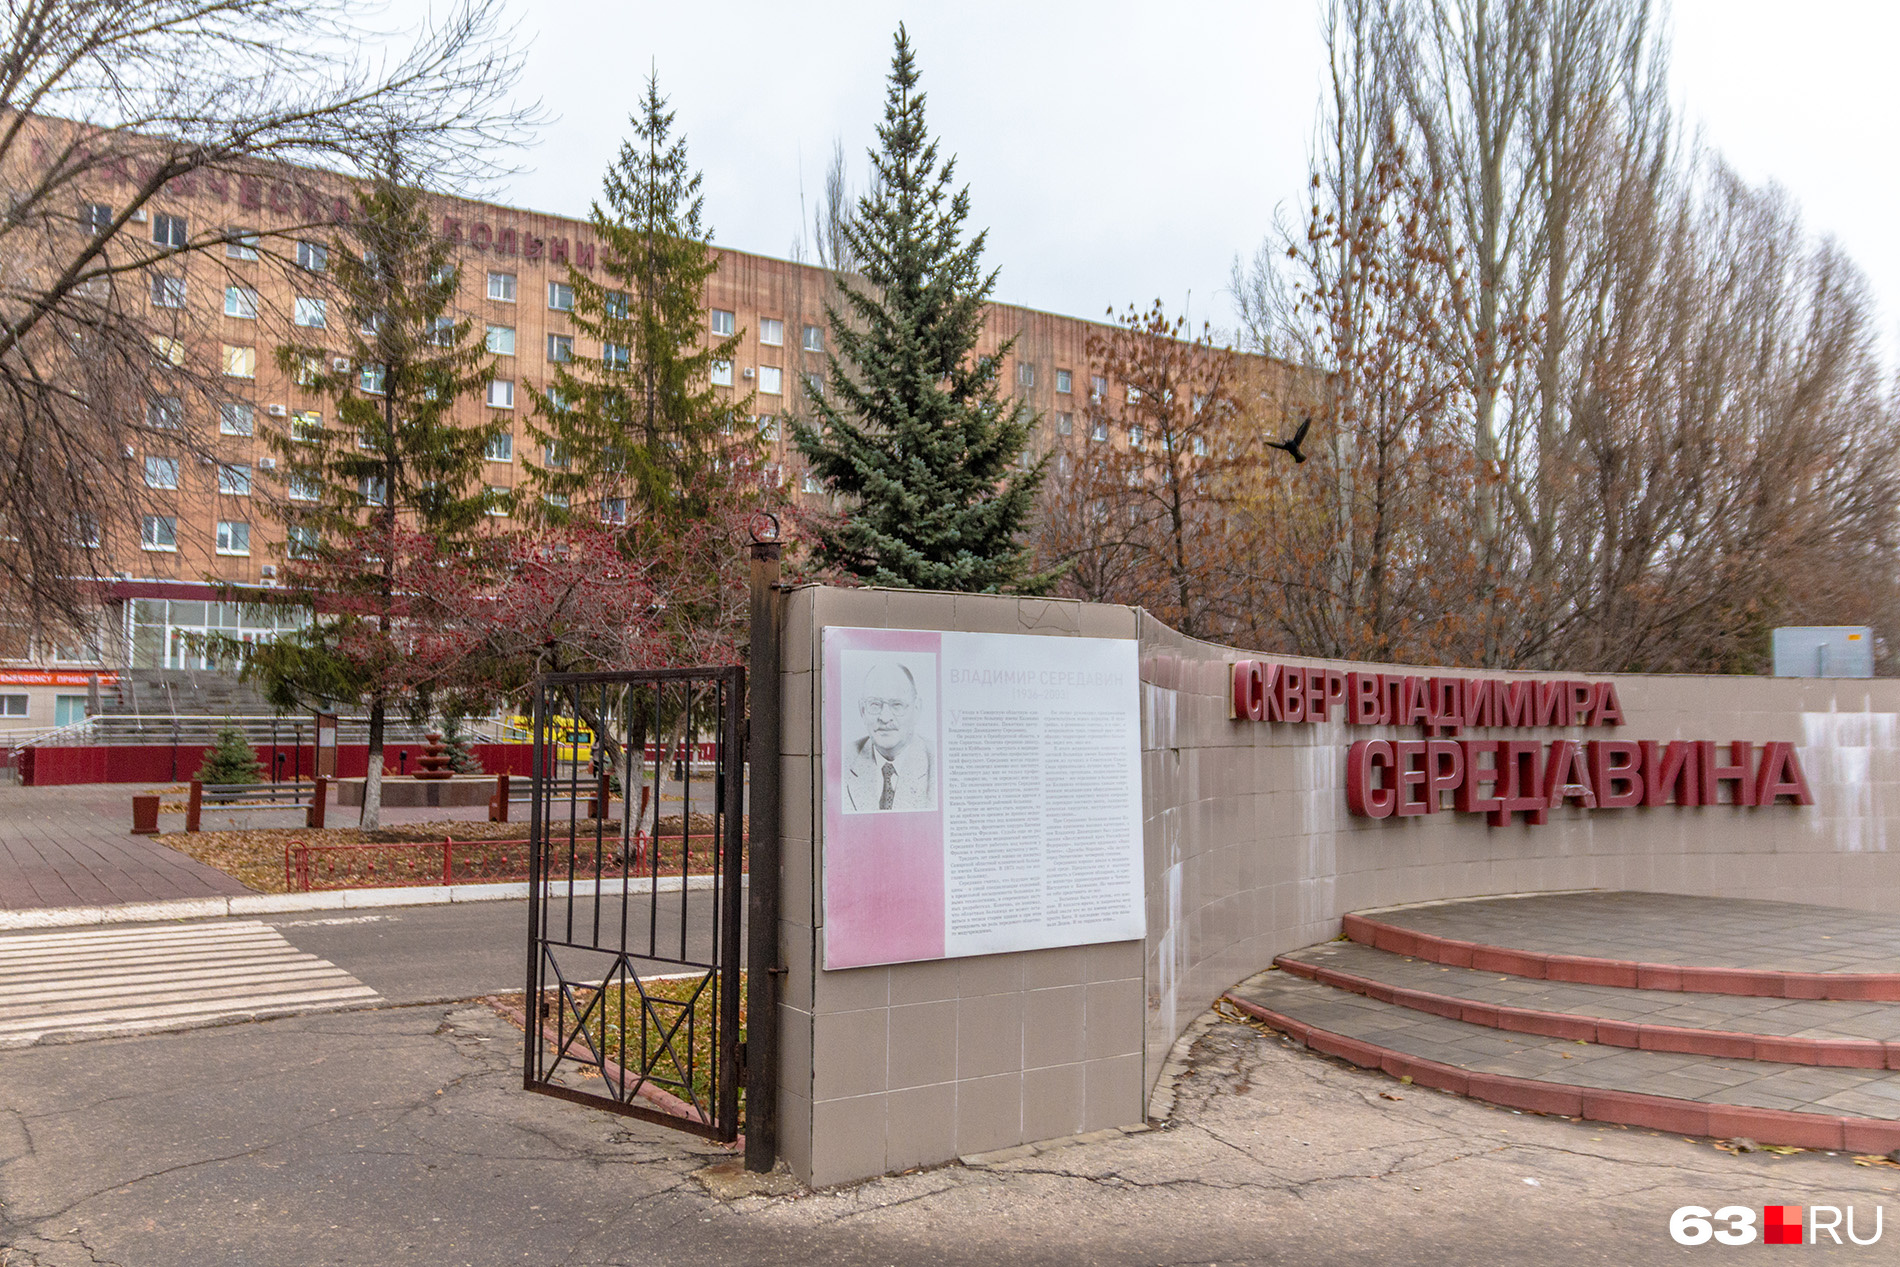 Последние дни своей жизни Владимир Лузанов провел в больнице имени Середавина